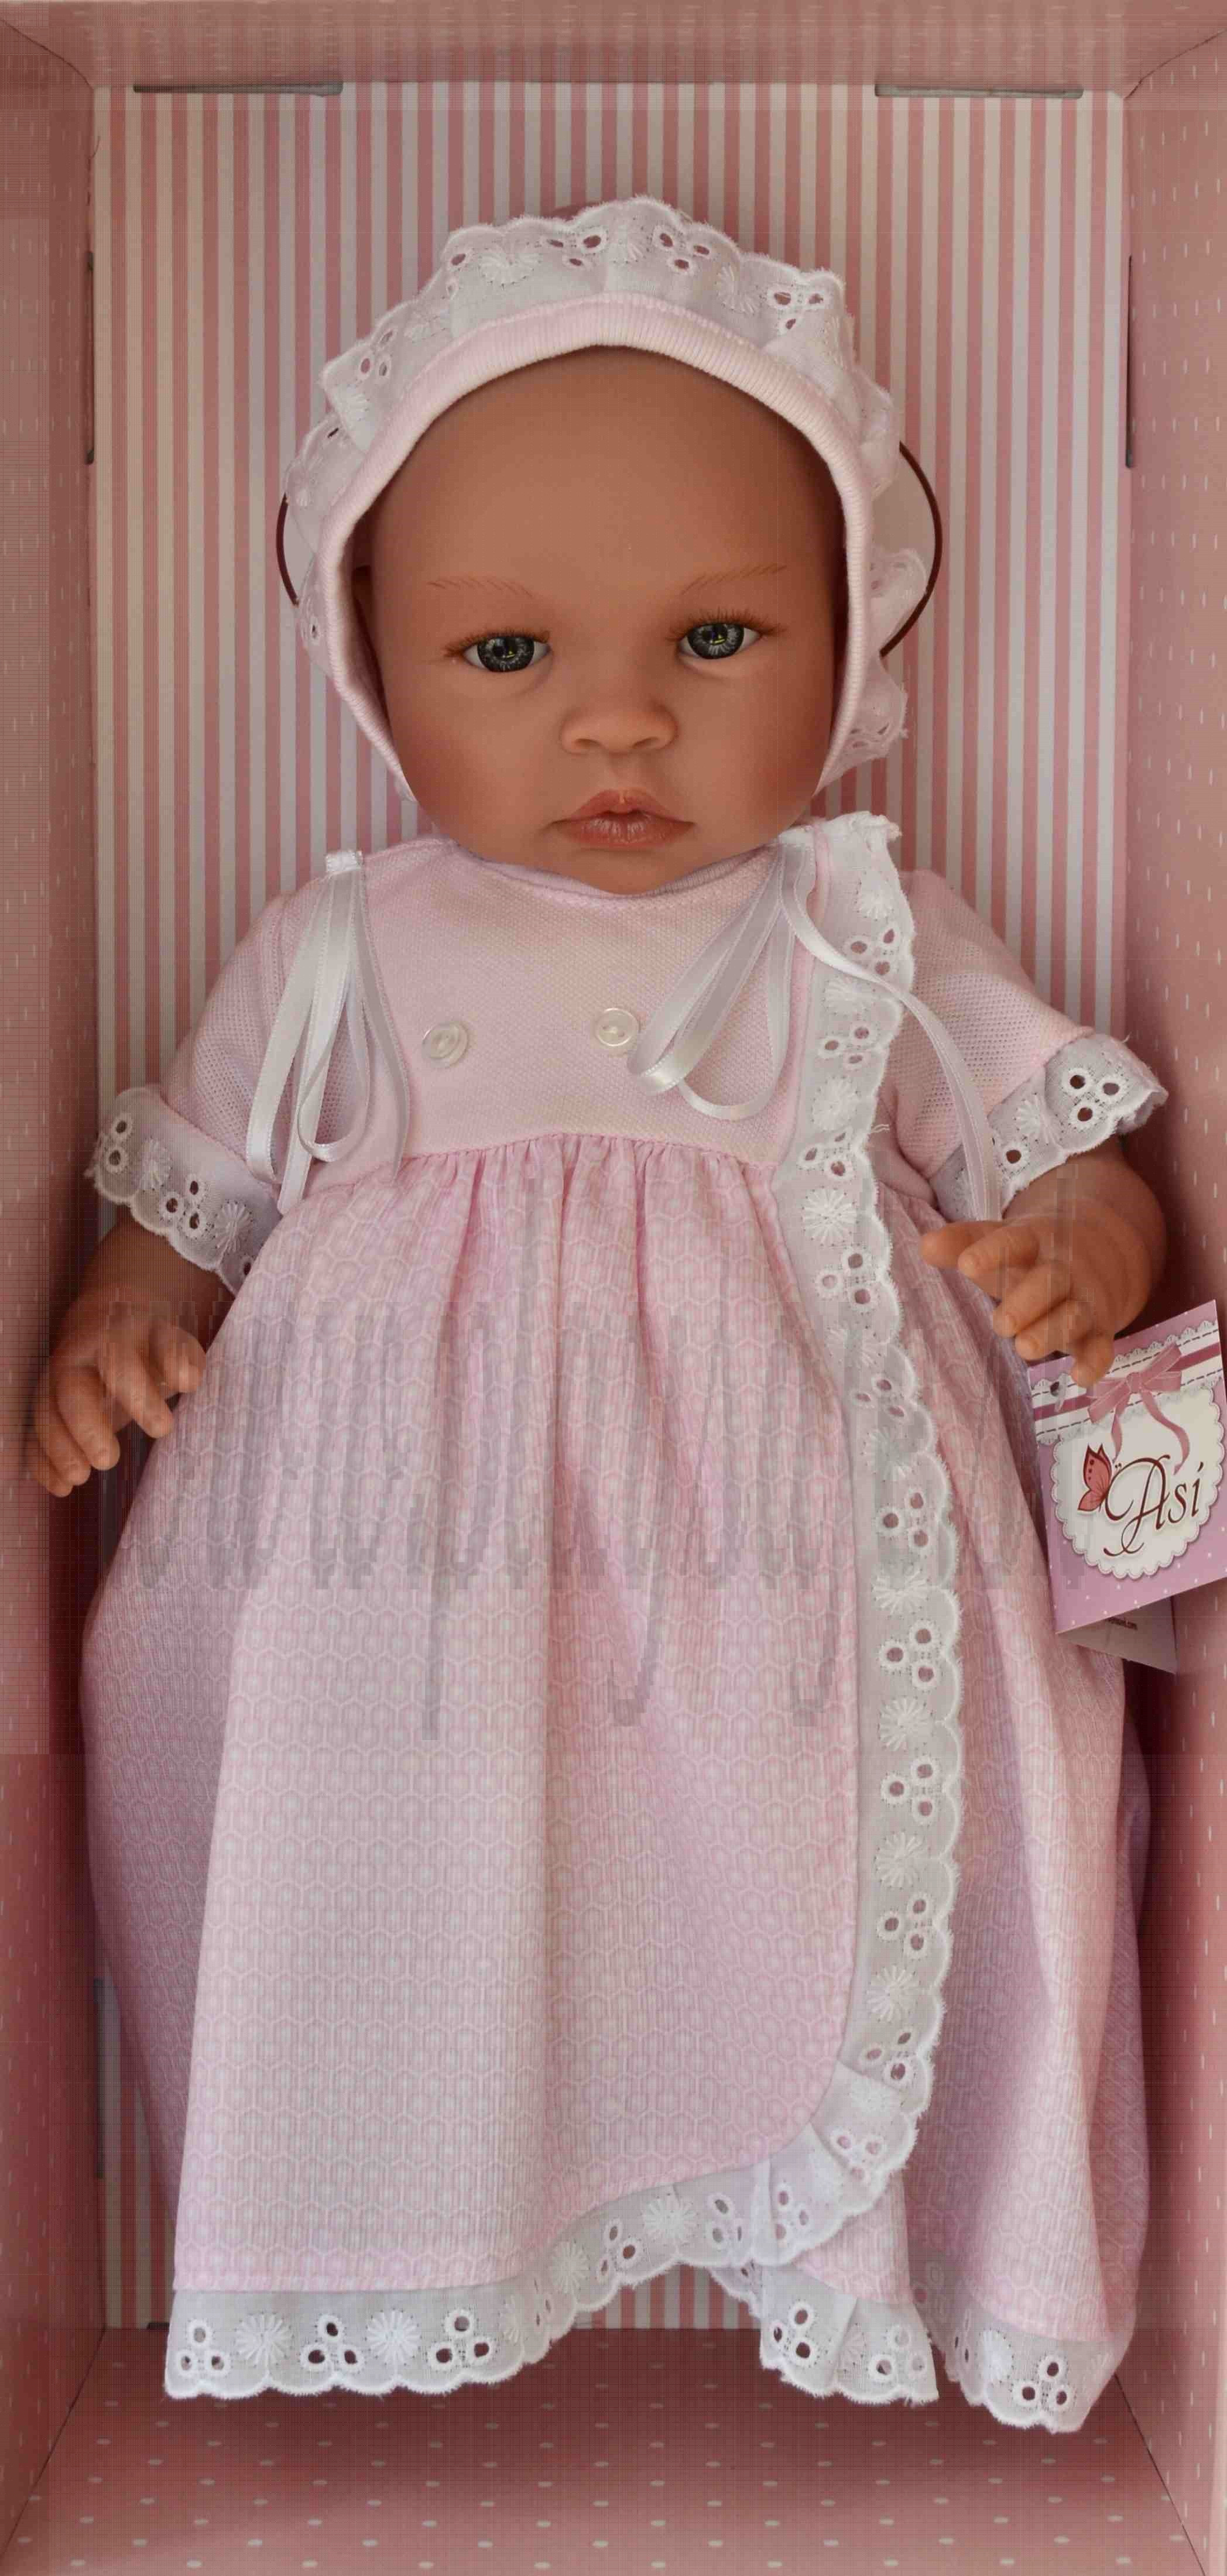 Asivil Baby Doll Soft Body Lea, 46cm in pink dress